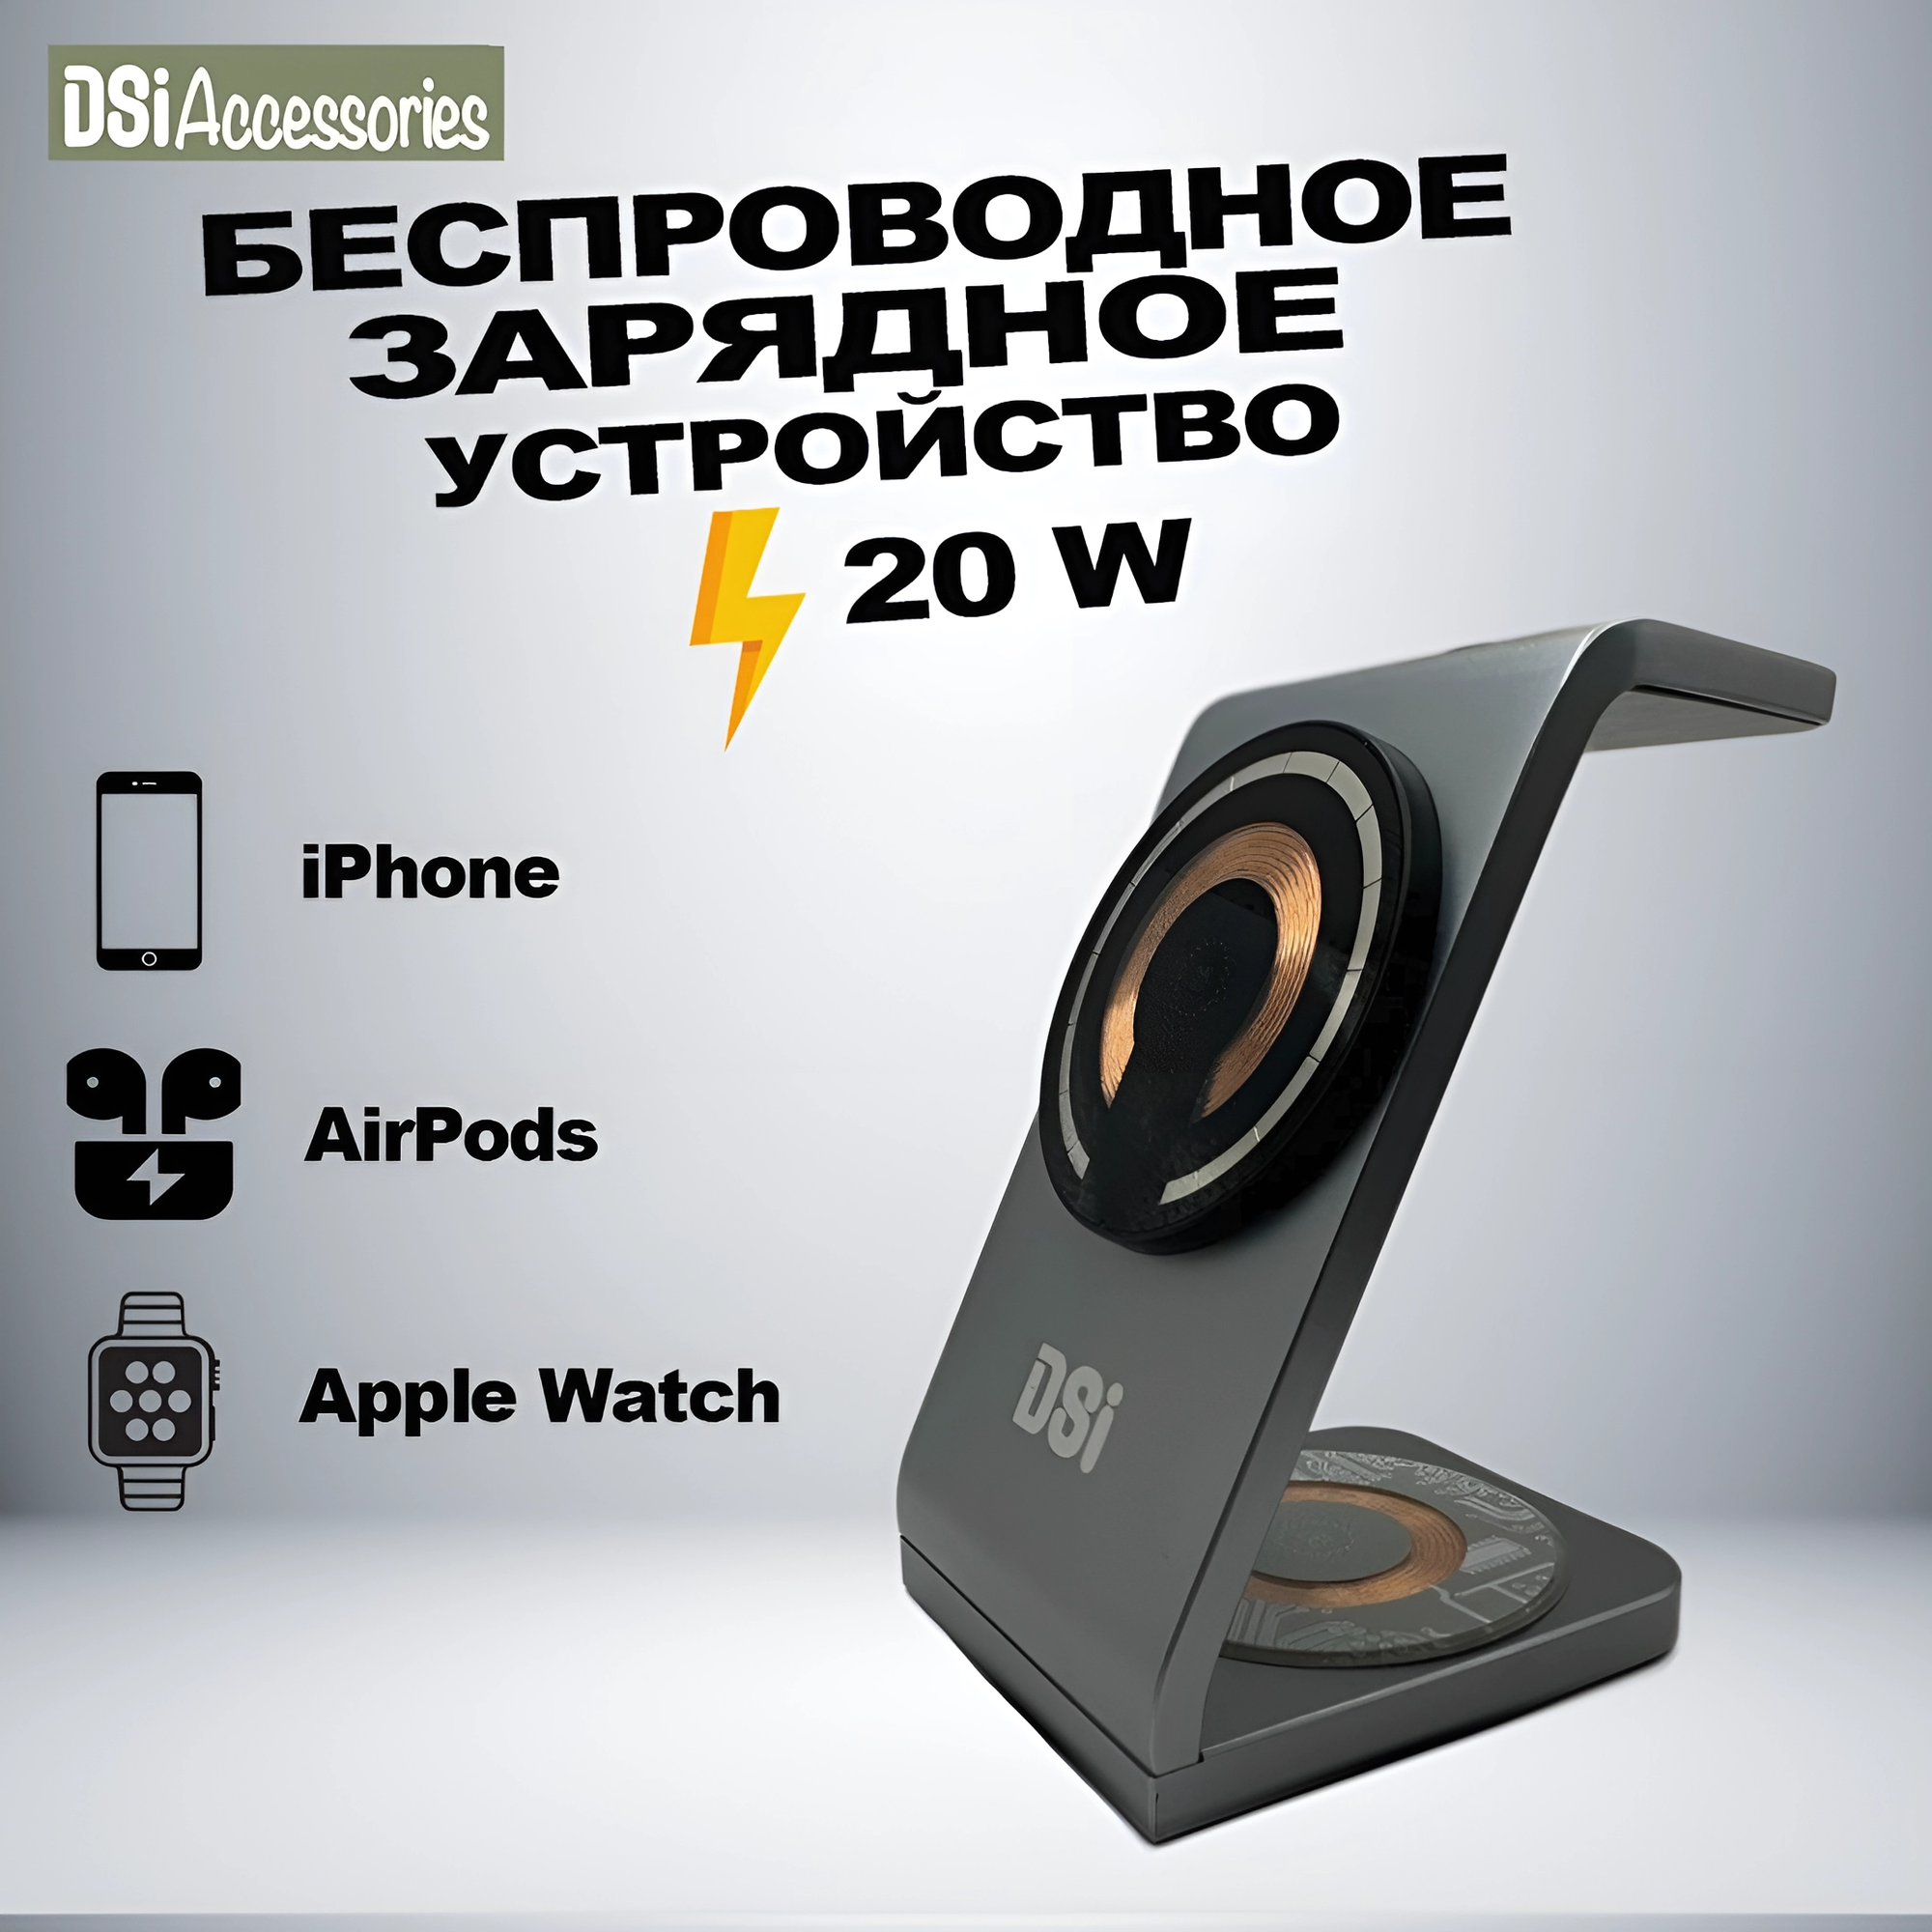 Зарядная станция "3 в 1" для iPhone, AirPods и Apple Watch